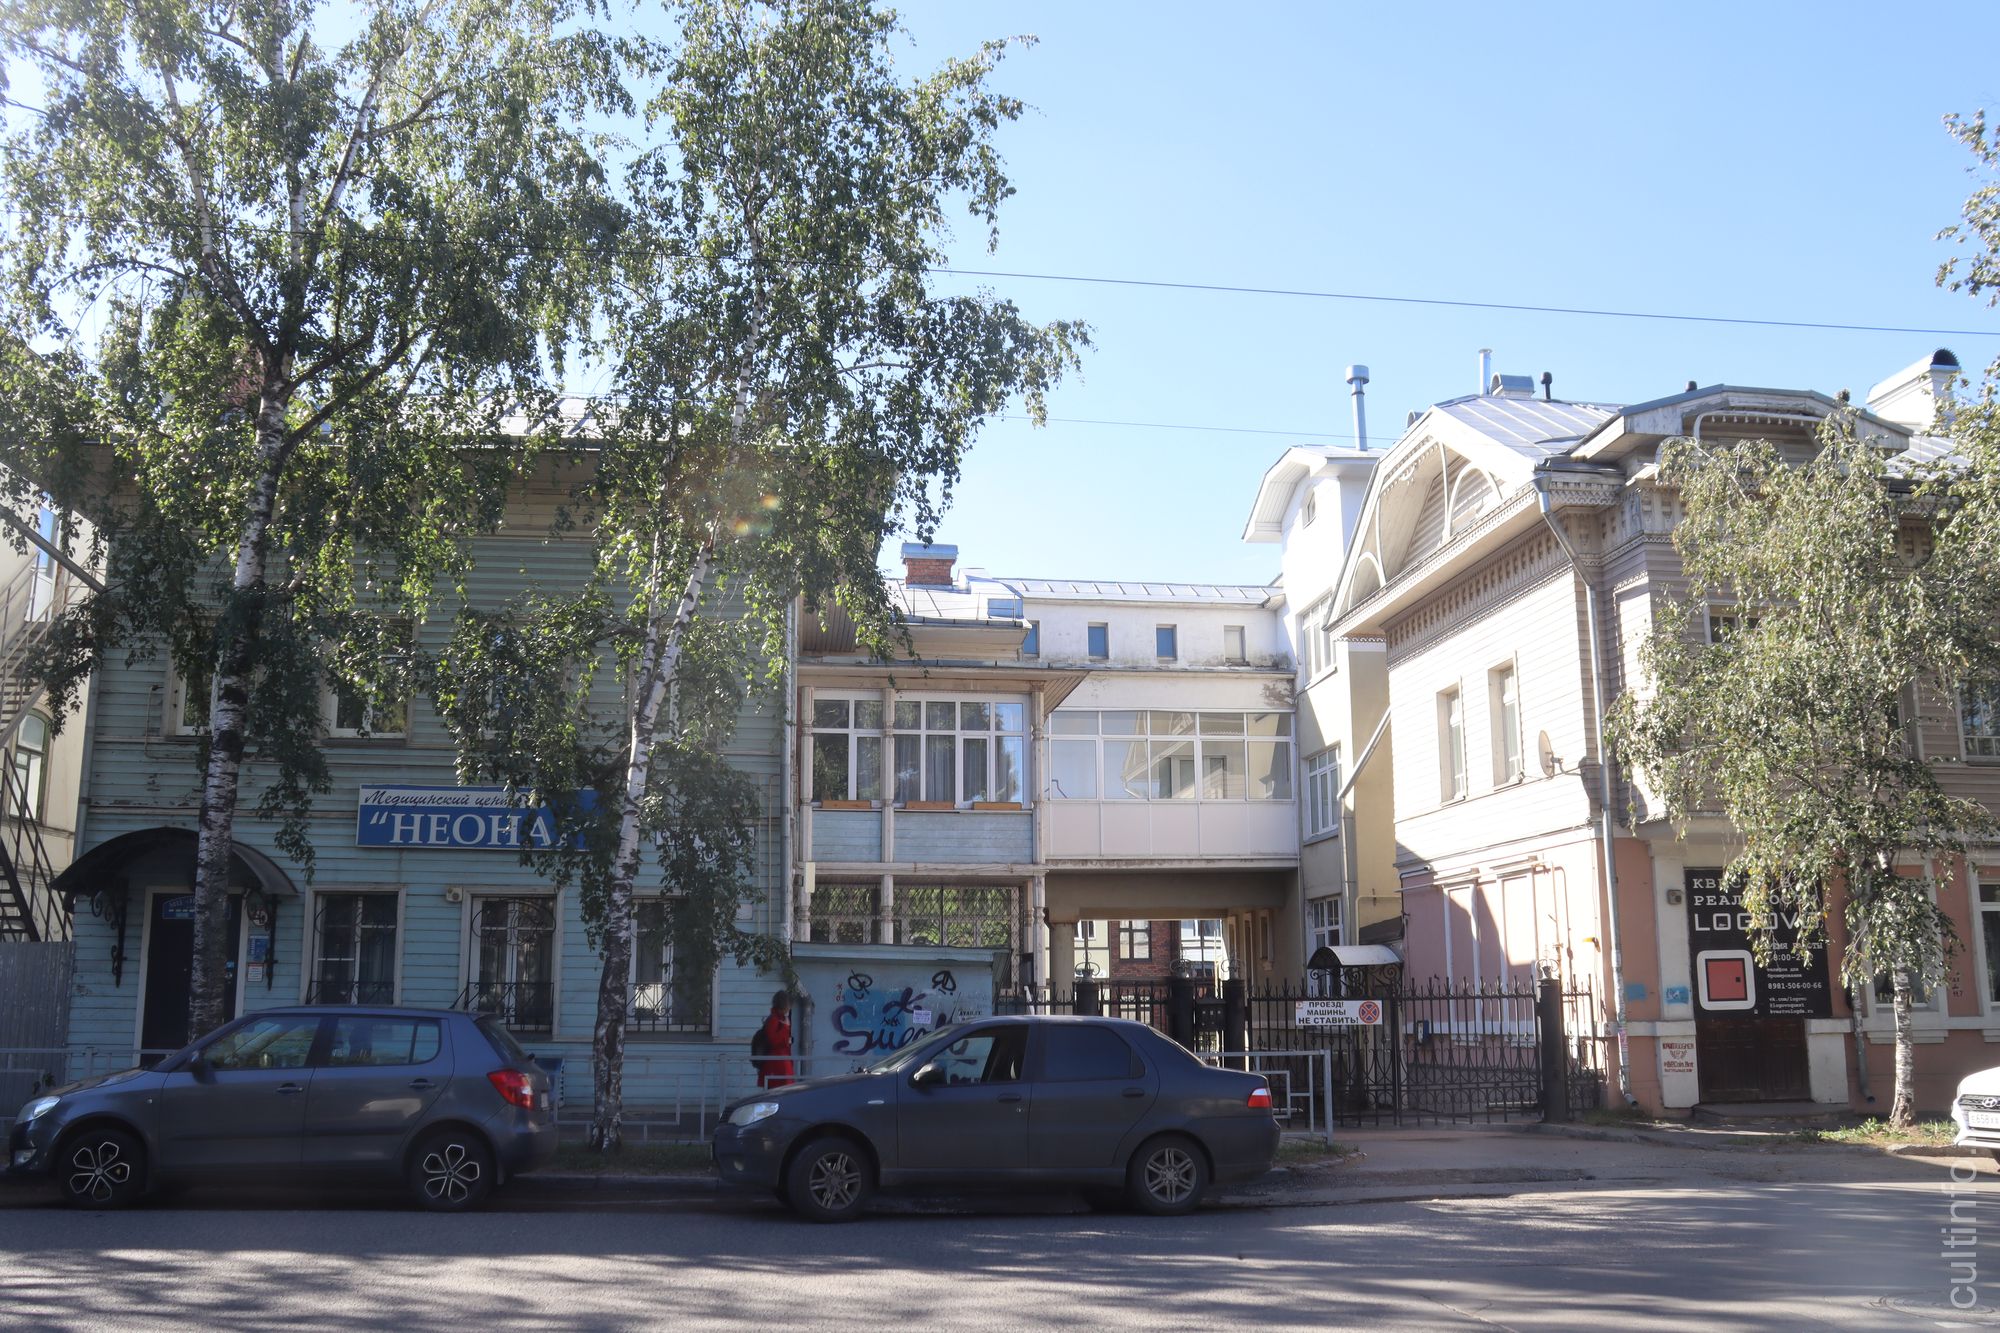 Реконструкция жилых домов по Советскому проспекту, 36. Архитекторы восстановили исторический облик снесенных домов и объединили их в единый комплекс с переходами.